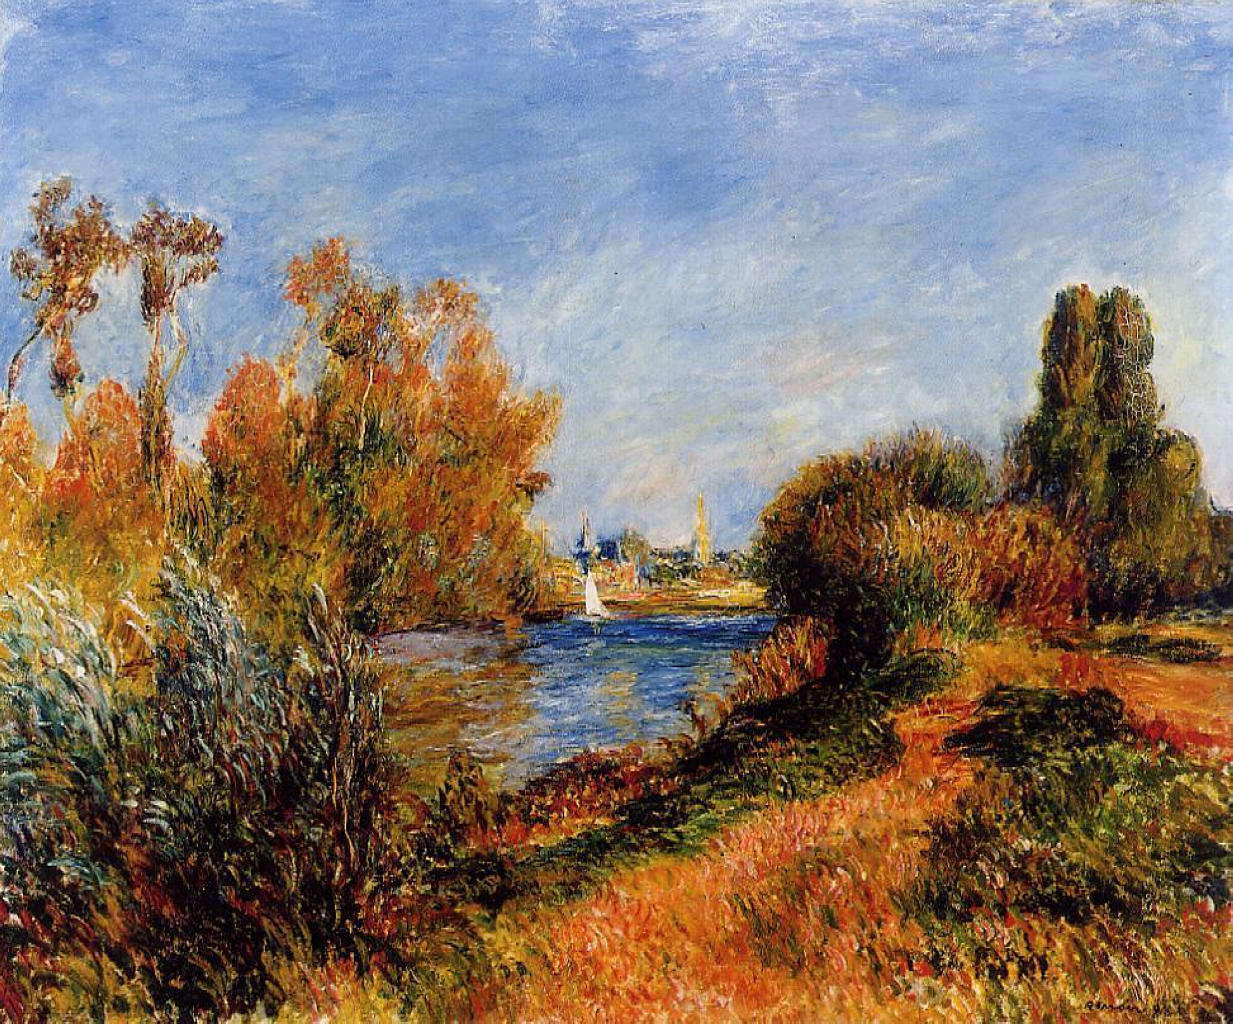 Pierre+Auguste+Renoir-1841-1-19 (682).jpg